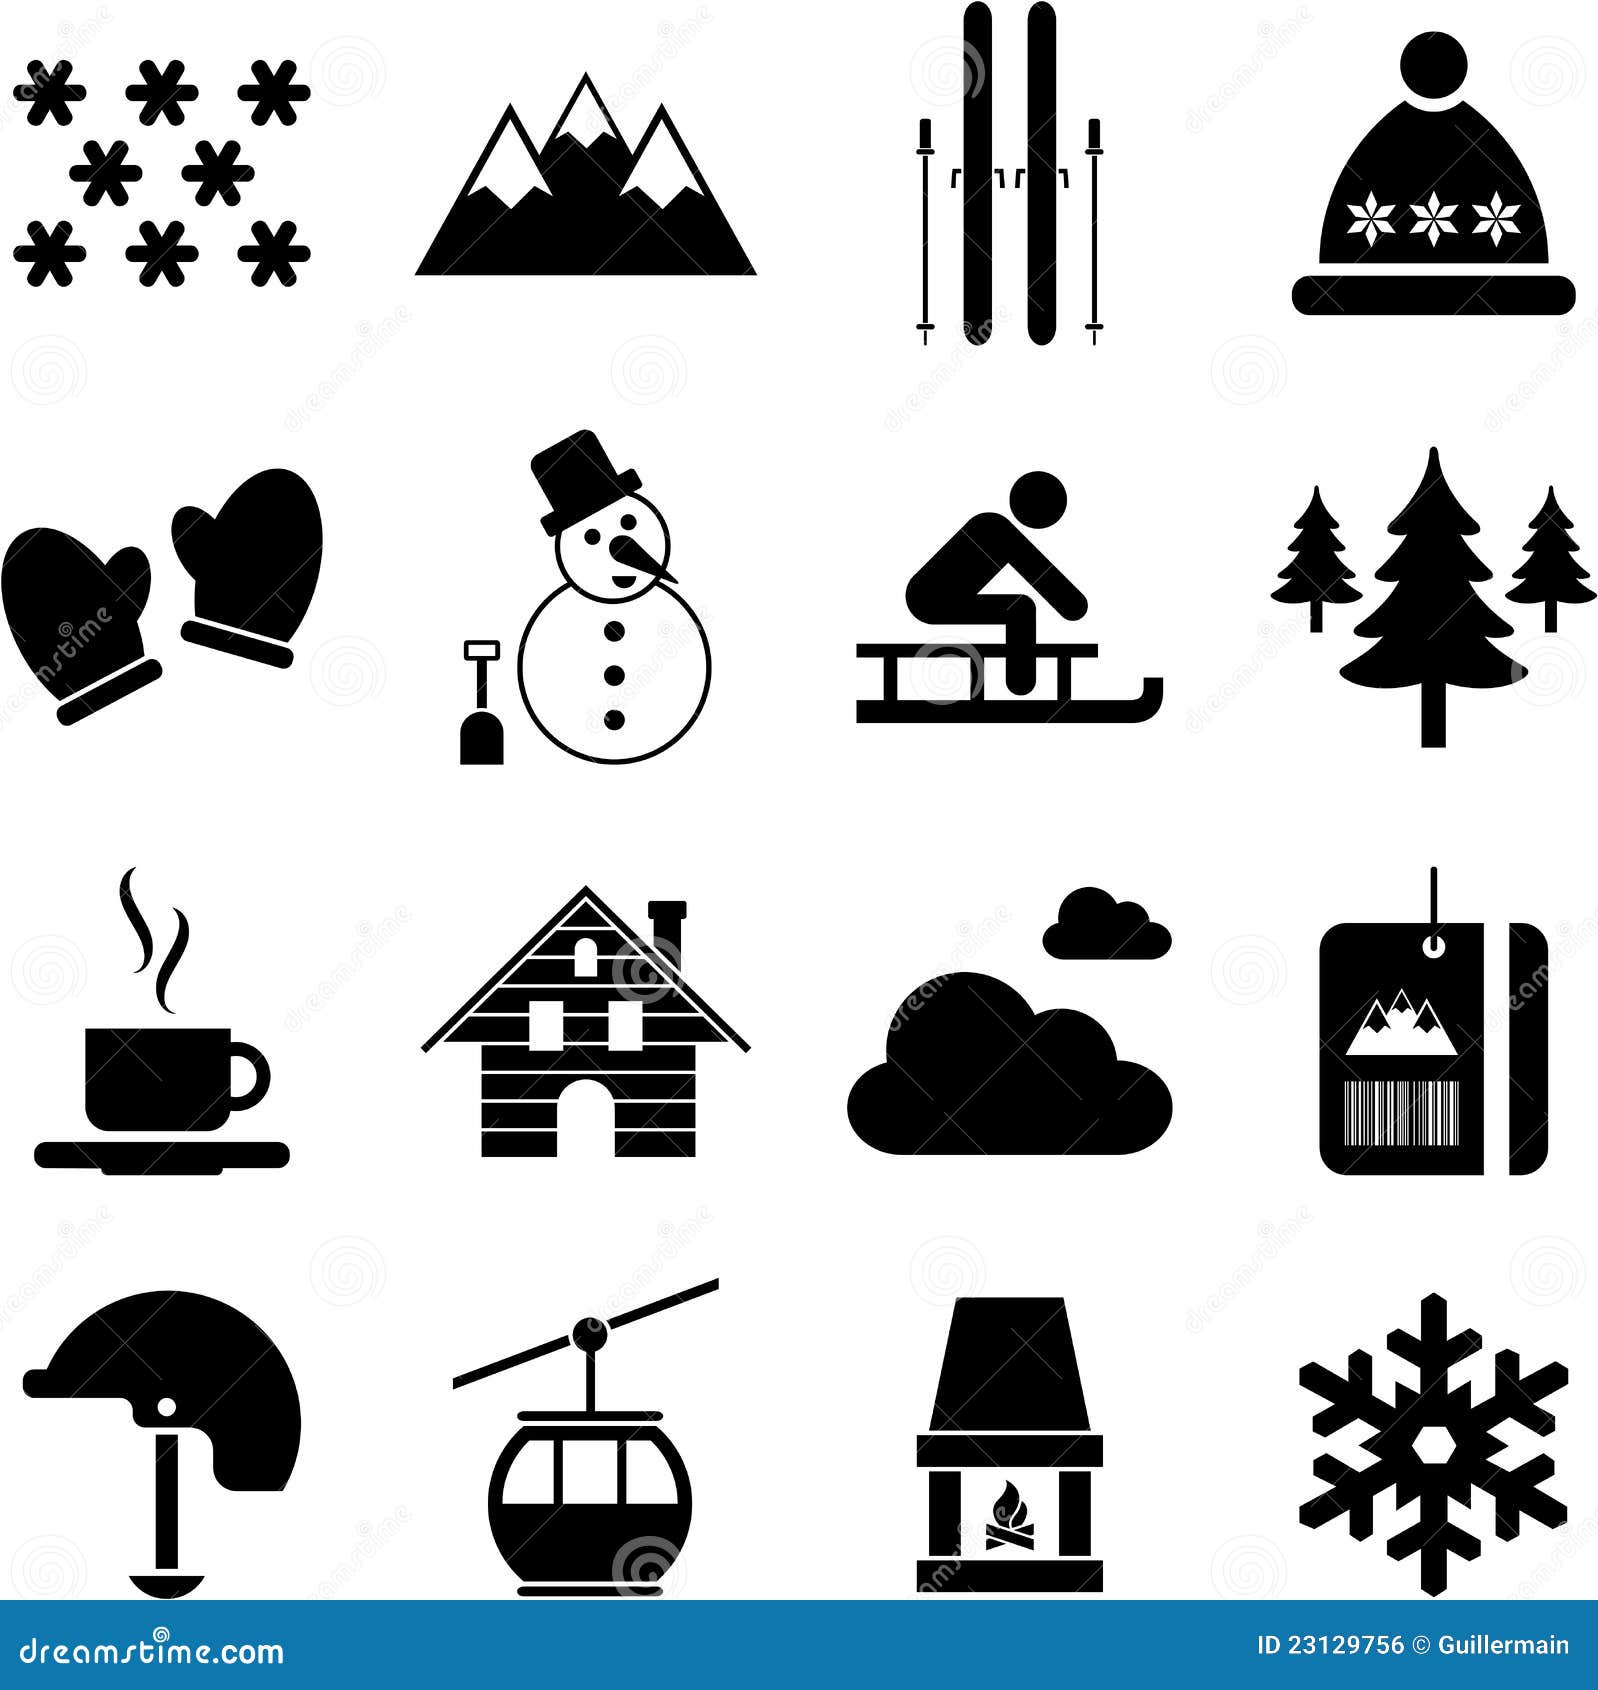 winter/alpine/ski pictograms